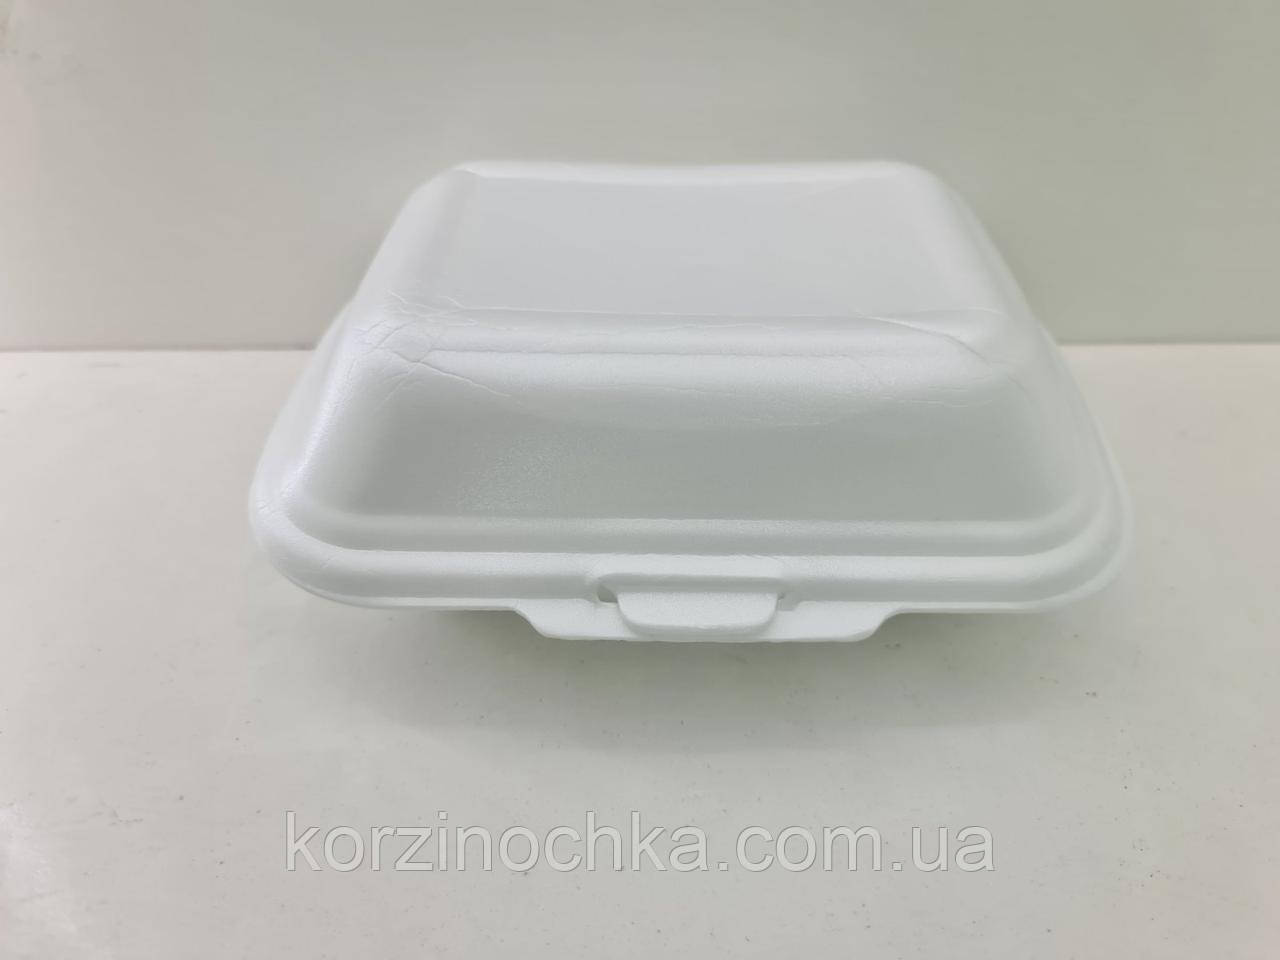 Ланч-бокс Лоток Одноразовий зі спіненого полістиролу з кришкою(188*149*80)білий ВПС-9(250 шт)Упаковка Посуд